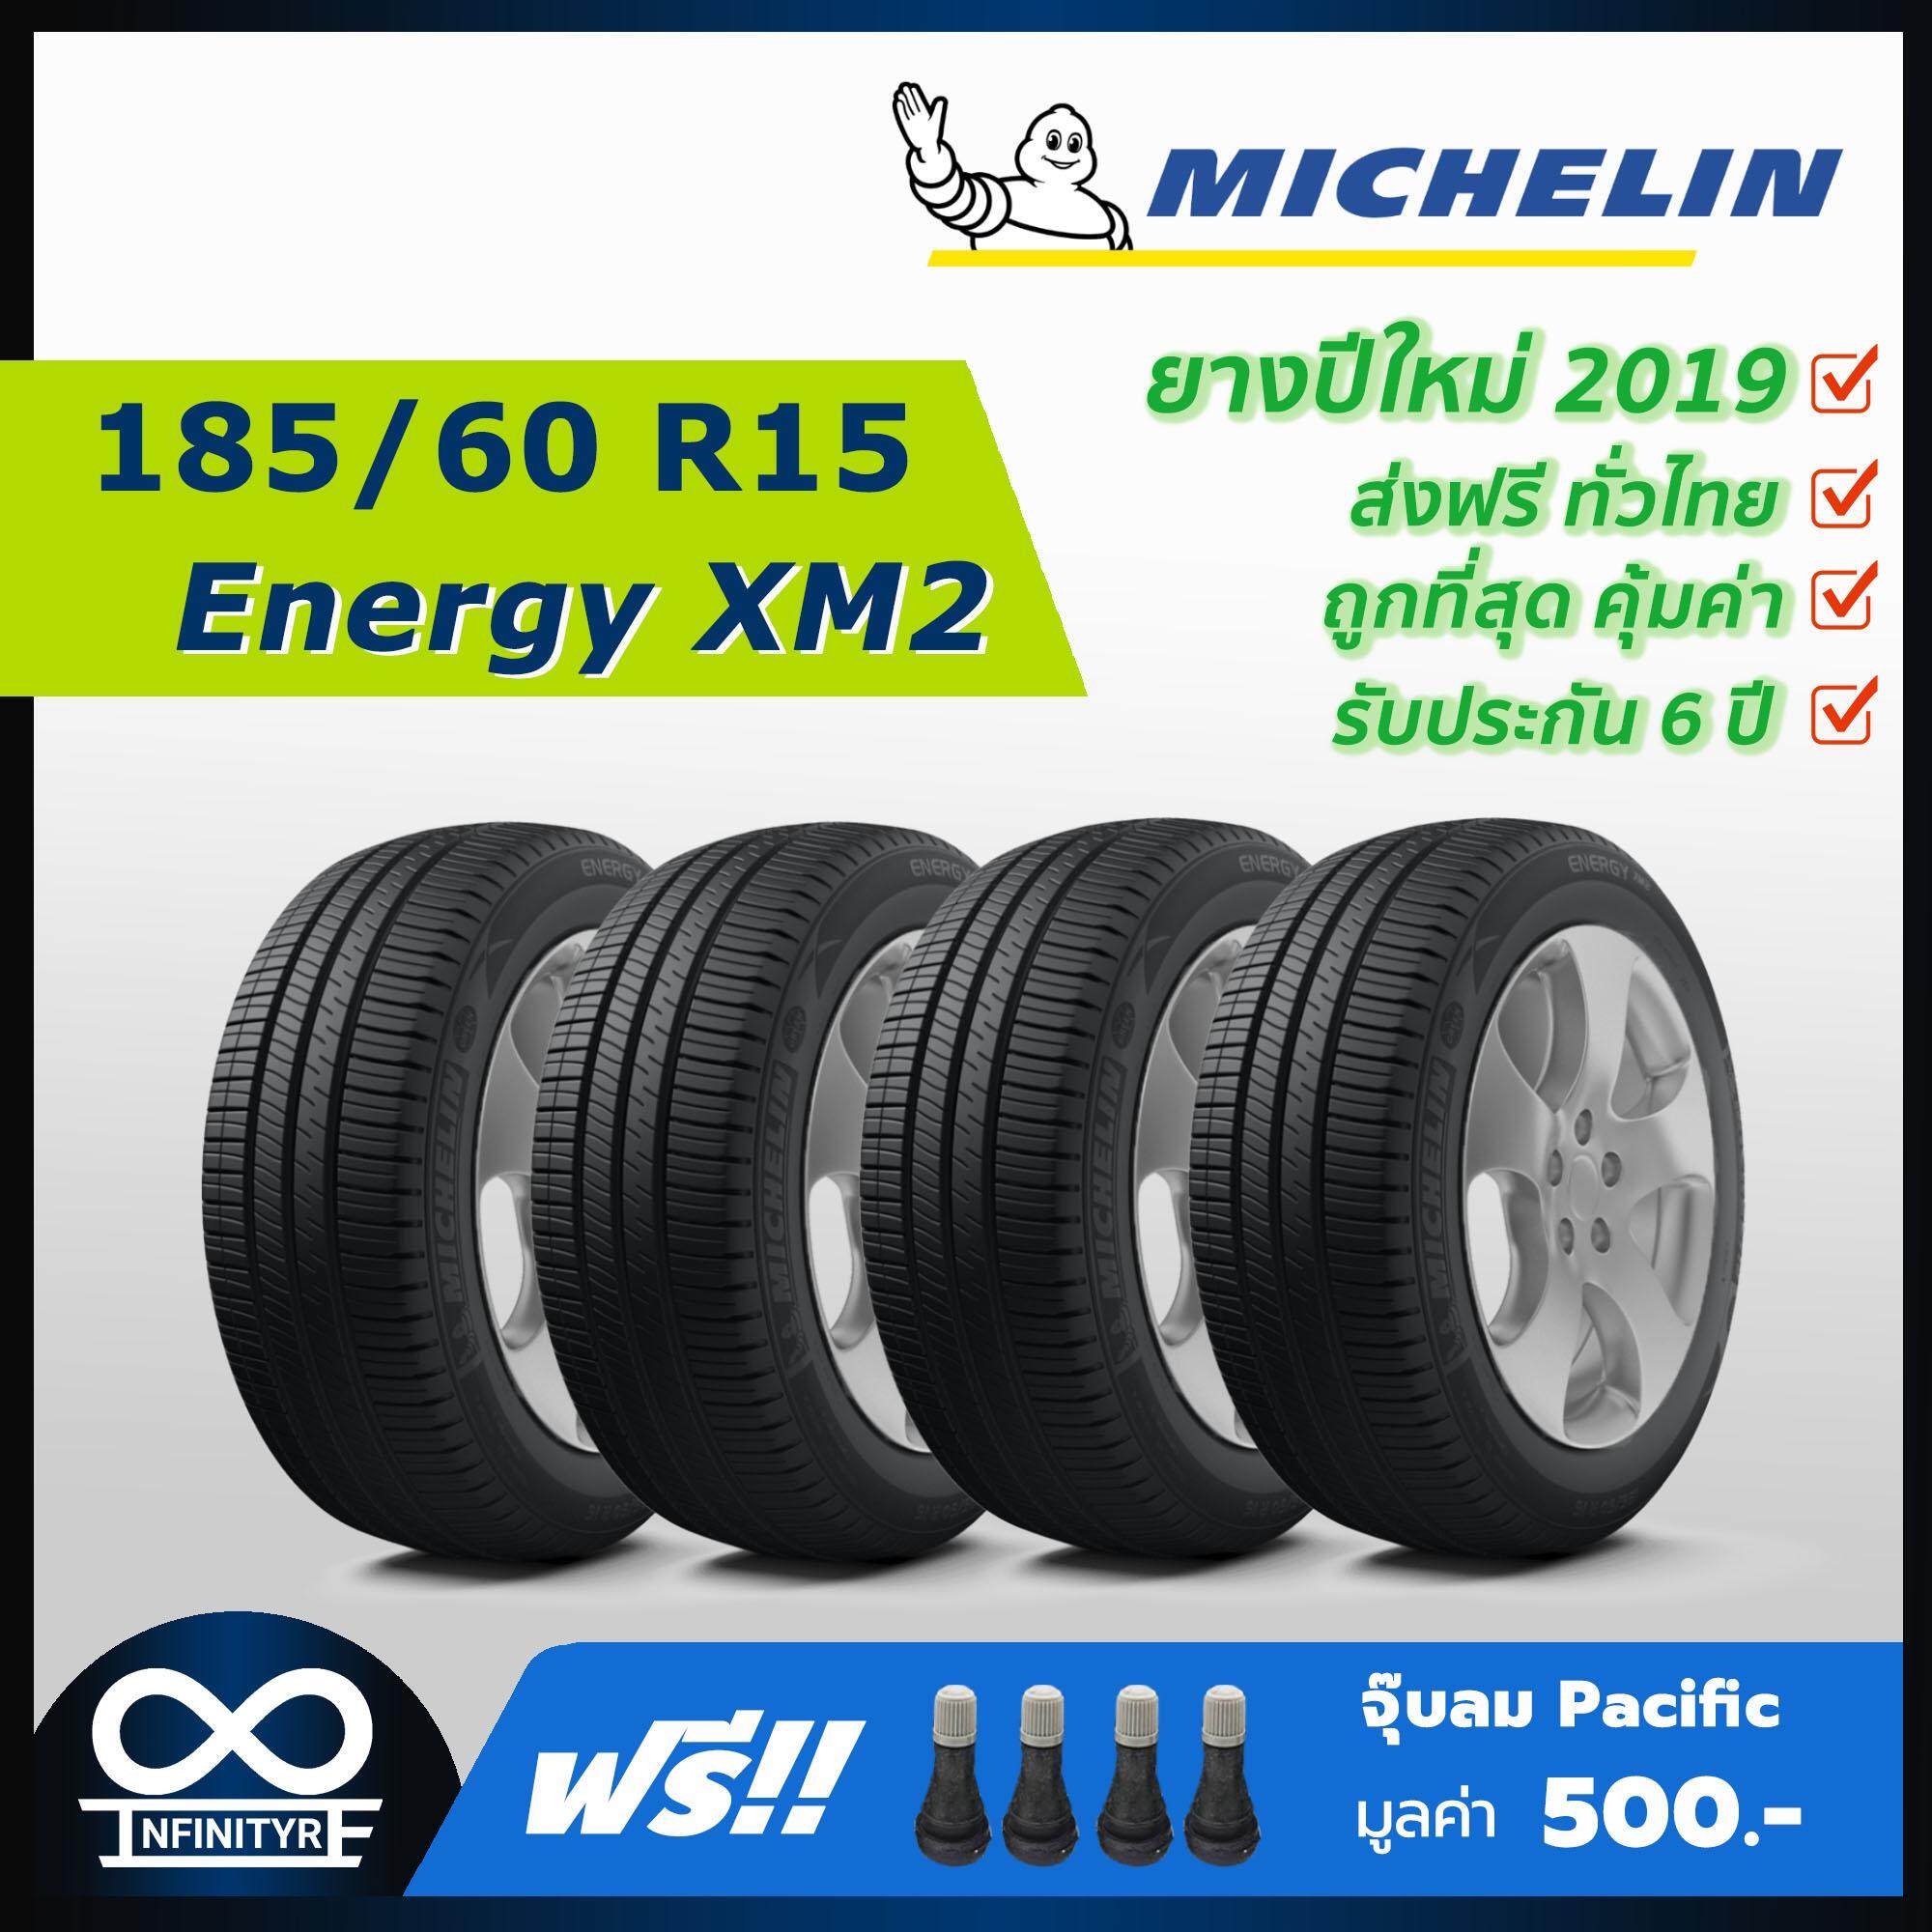 ประกันภัย รถยนต์ ชั้น 3 ราคา ถูก เพชรบุรี 185/60R15 Michelin รุ่น Energy XM2 (ปี2019) 4เส้น (ฟรี  จุ๊บลมPacific เกรดพรีเมี่ยม)